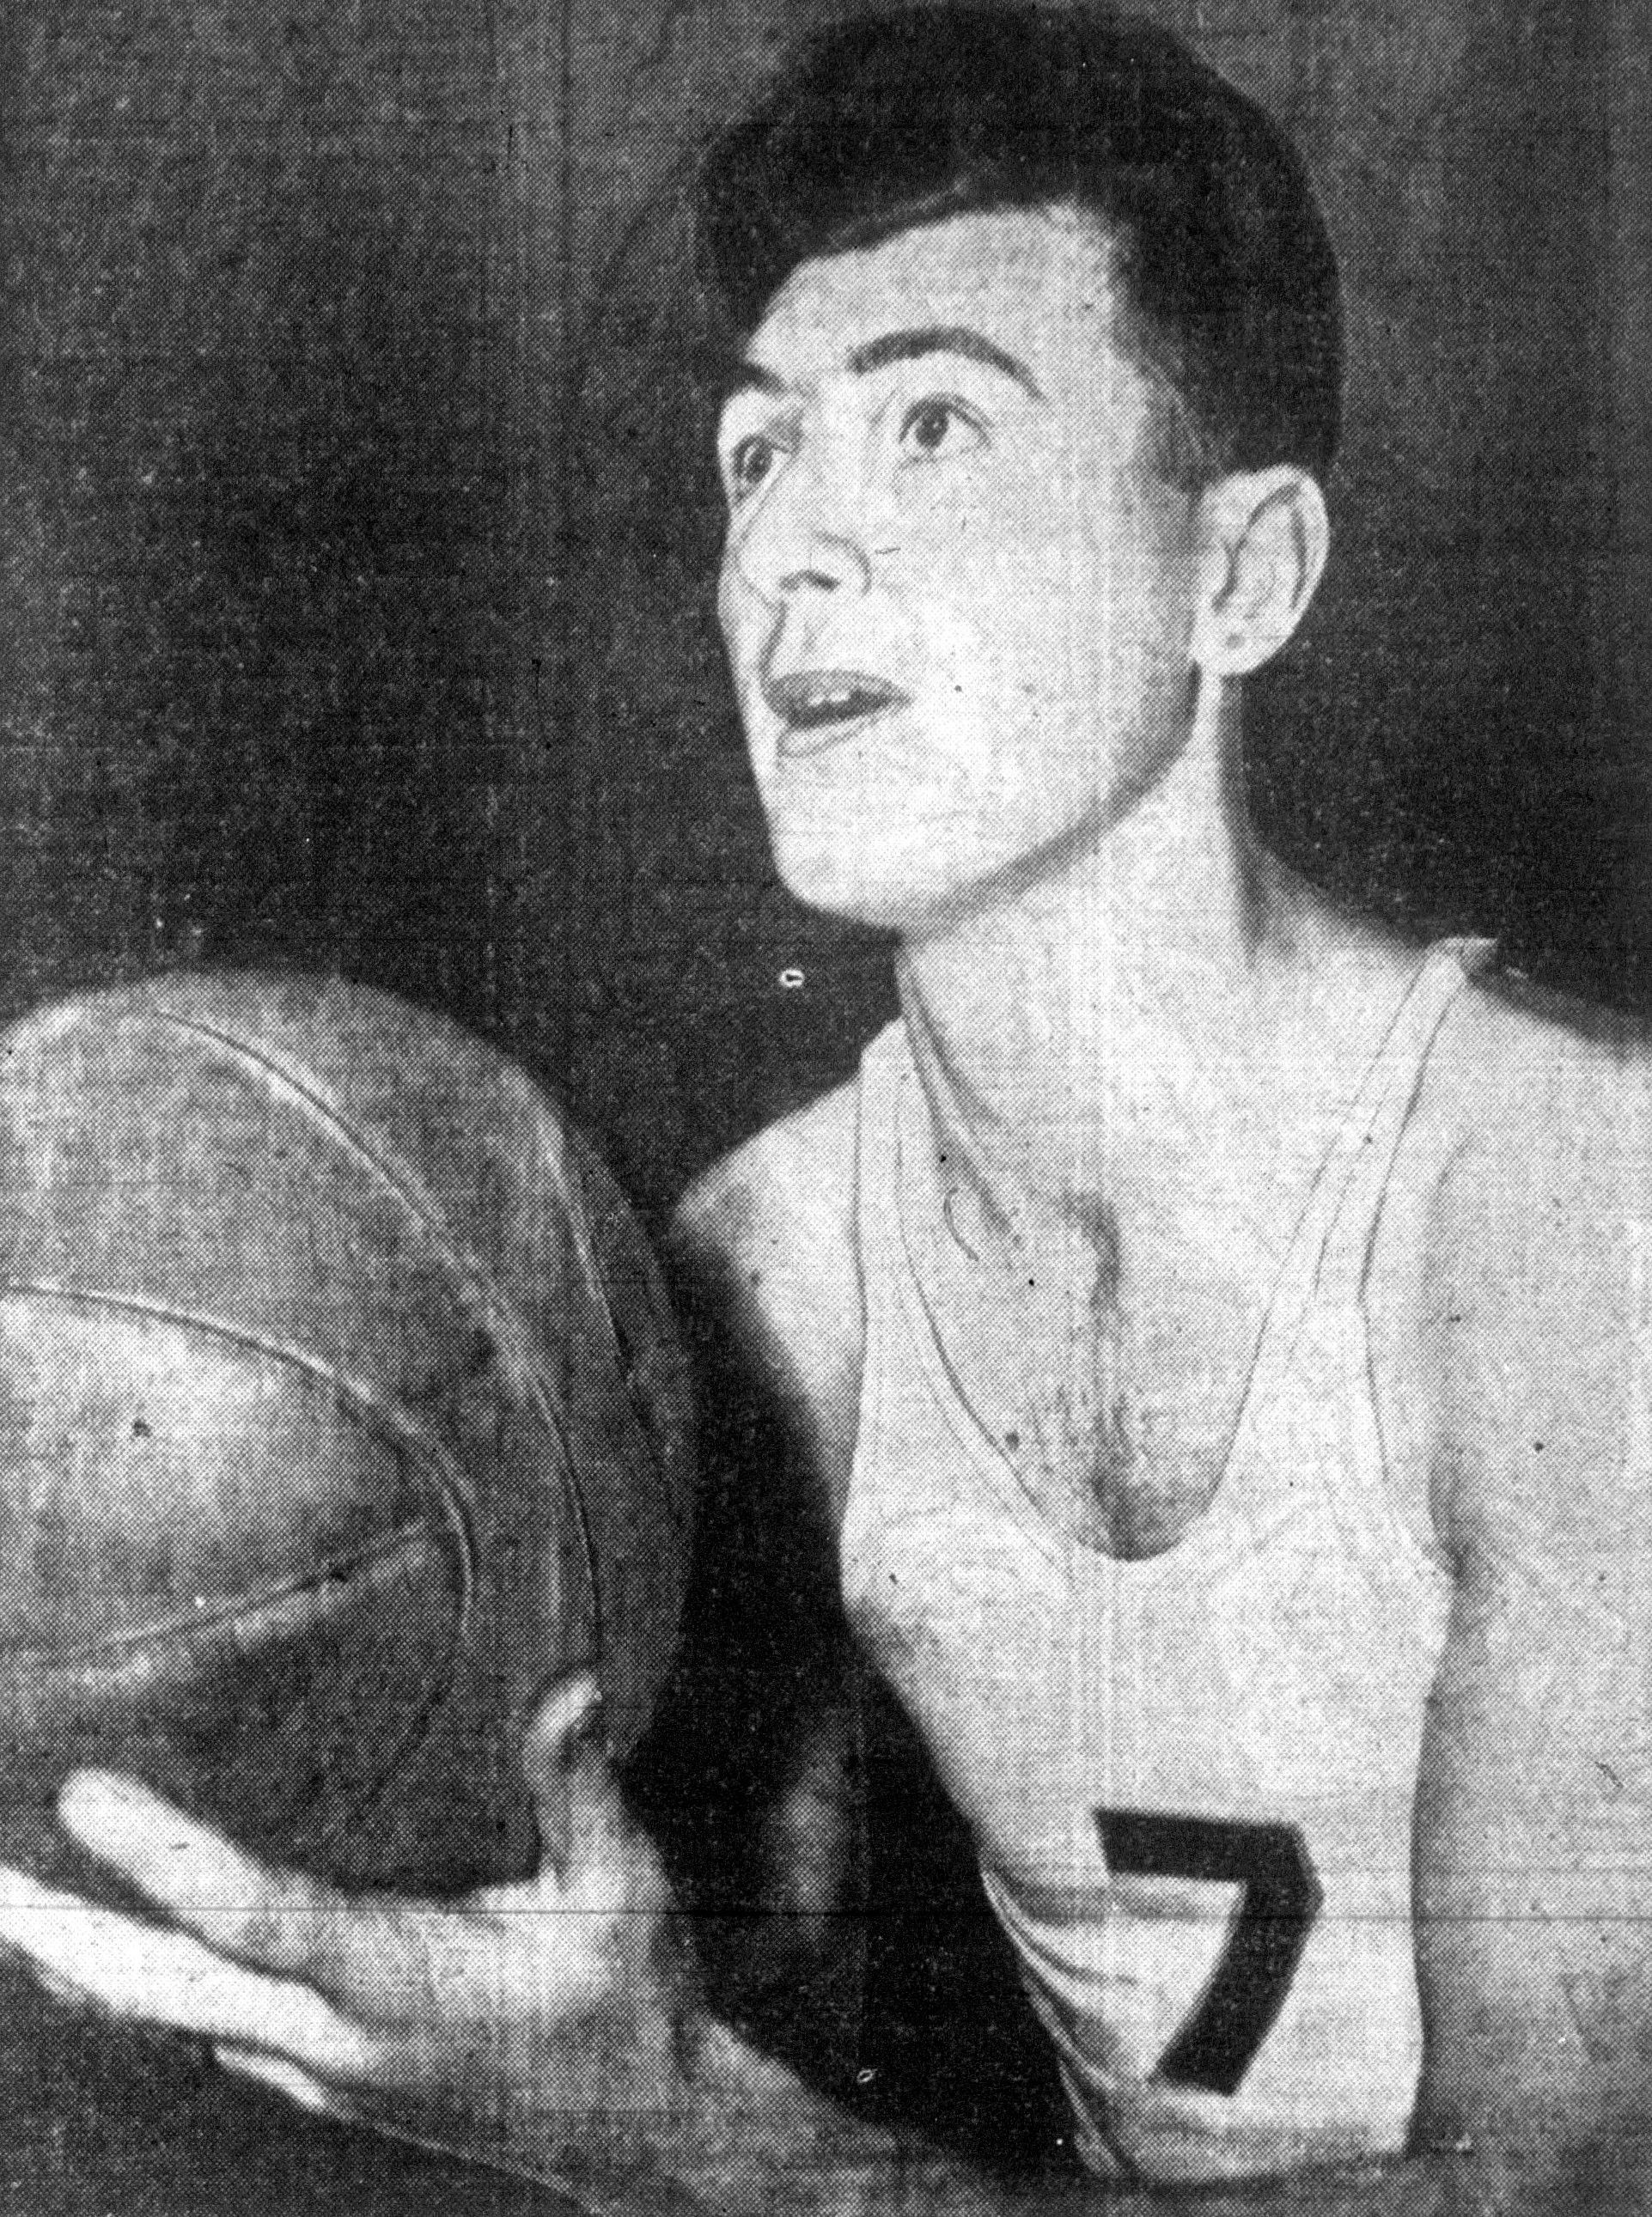 Basketball (ball) - Wikipedia